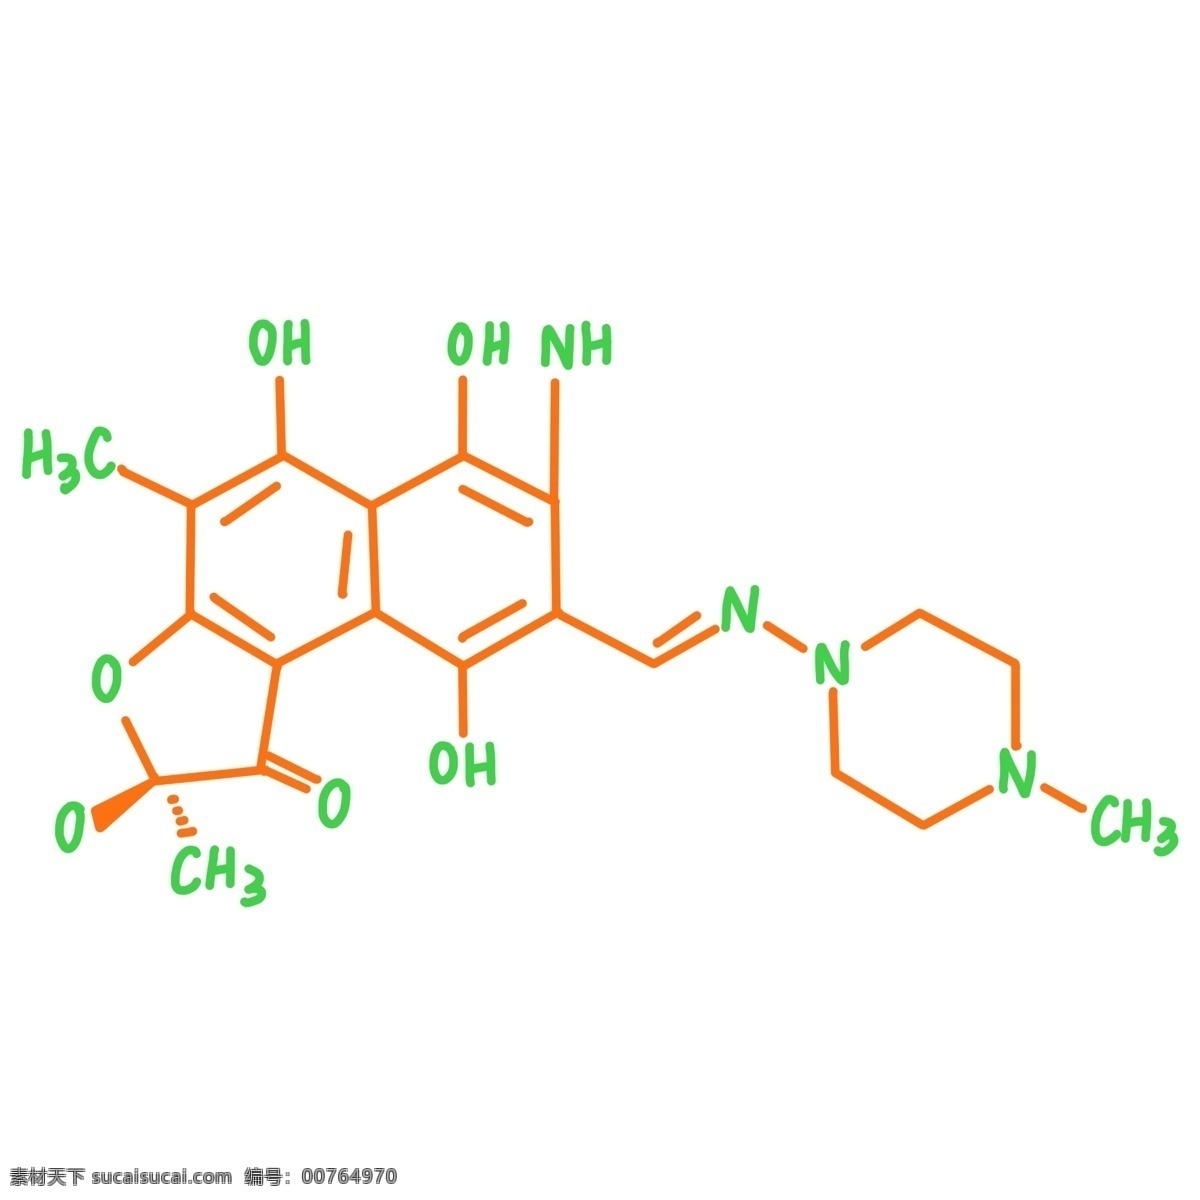 化学 分子 方程式 插图 有规则排序 化学方程式 复杂的结构 橙色分子 绿色方程式 看图插图 创意设计